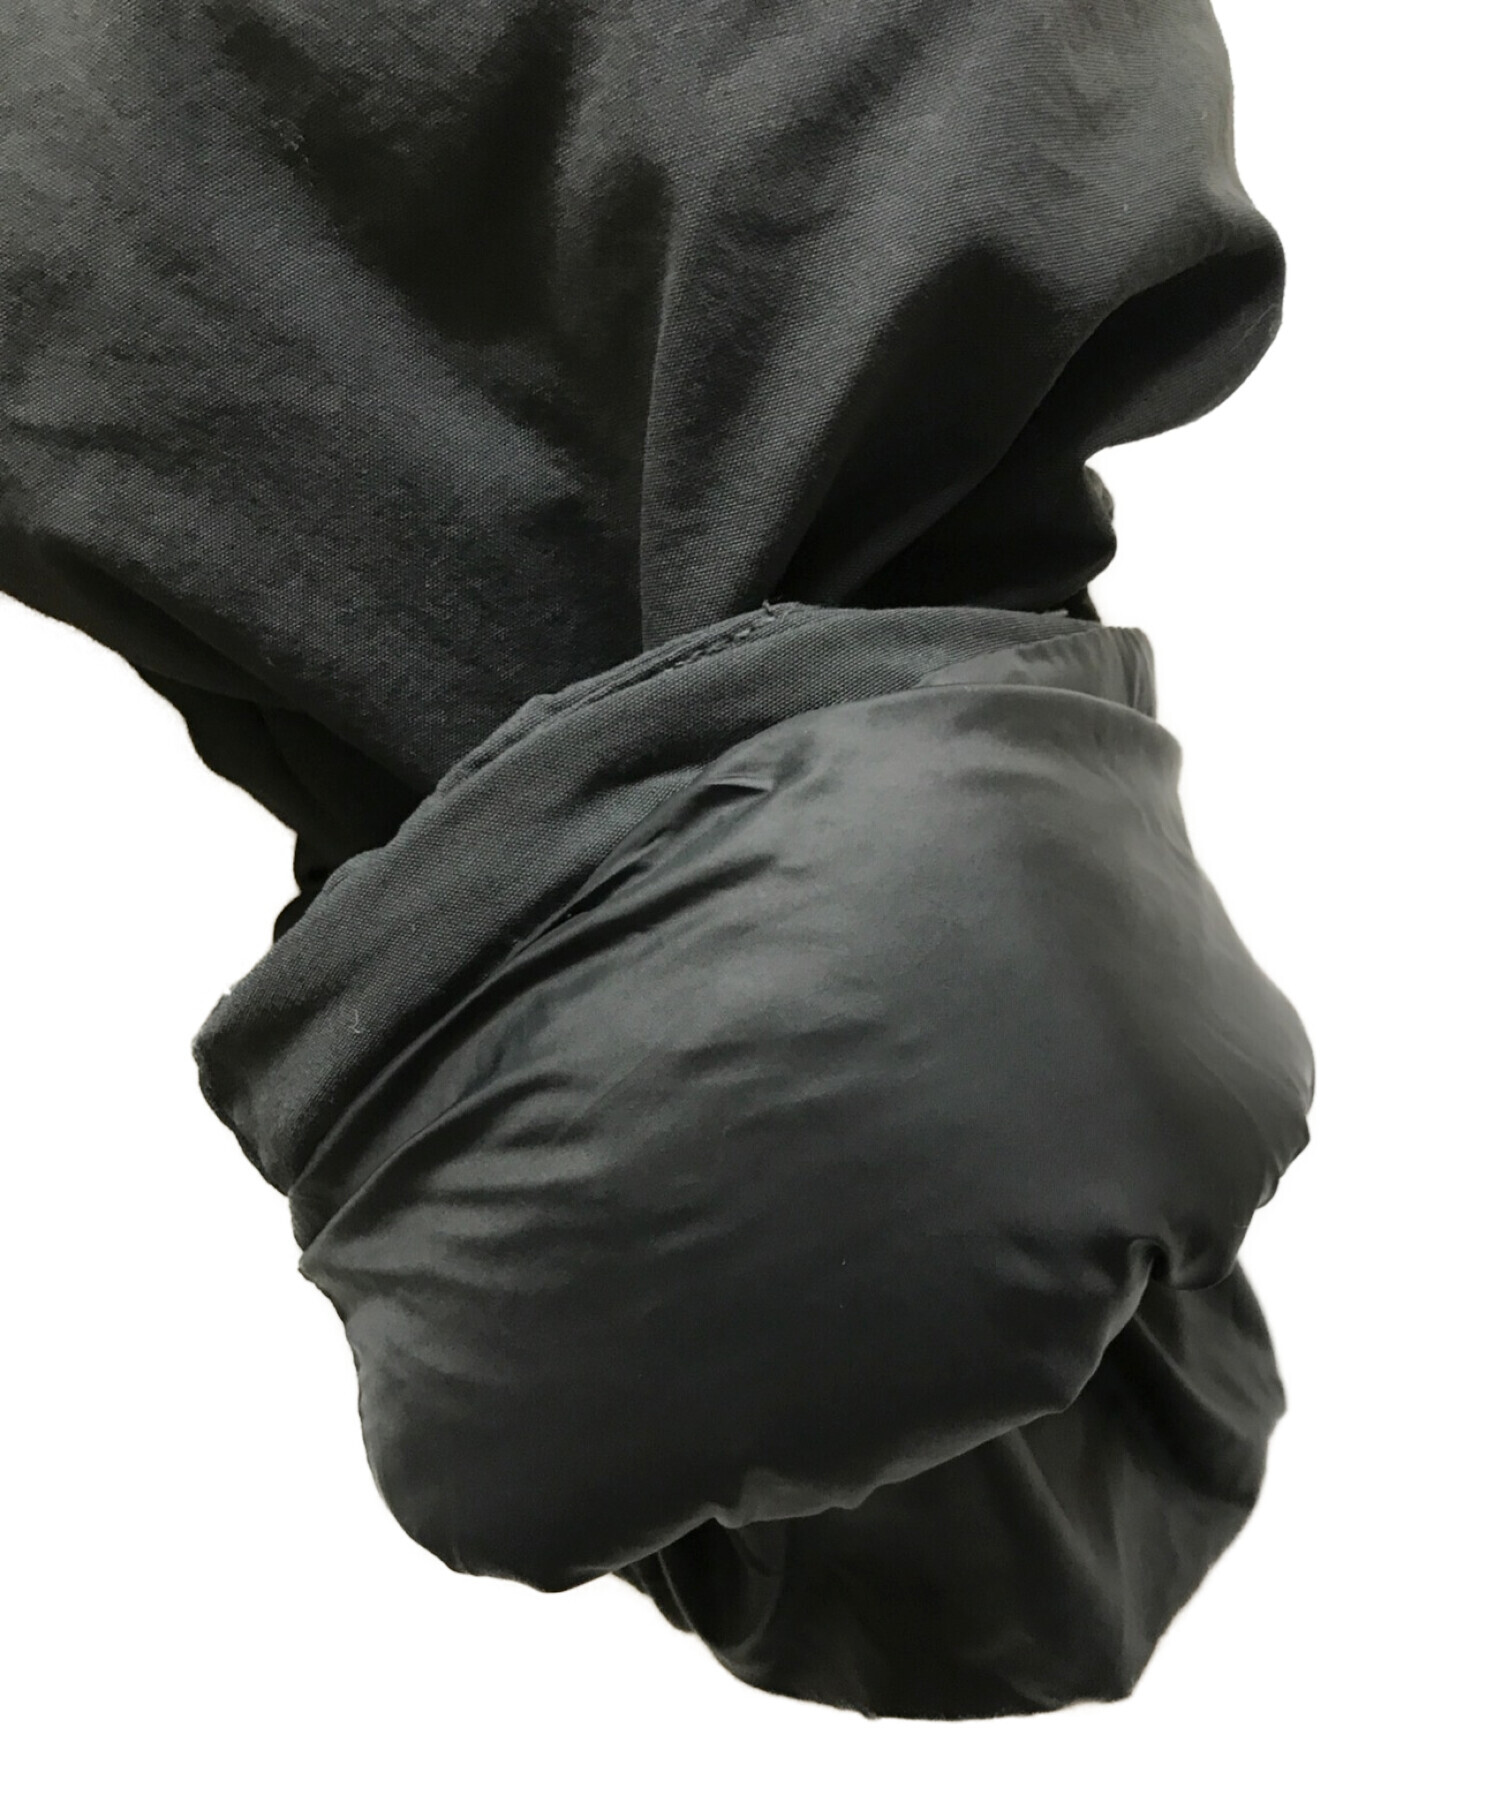 KITH (キス) Solid Puffer Jacket グレー（正式色SOFT BLACK) サイズ:L